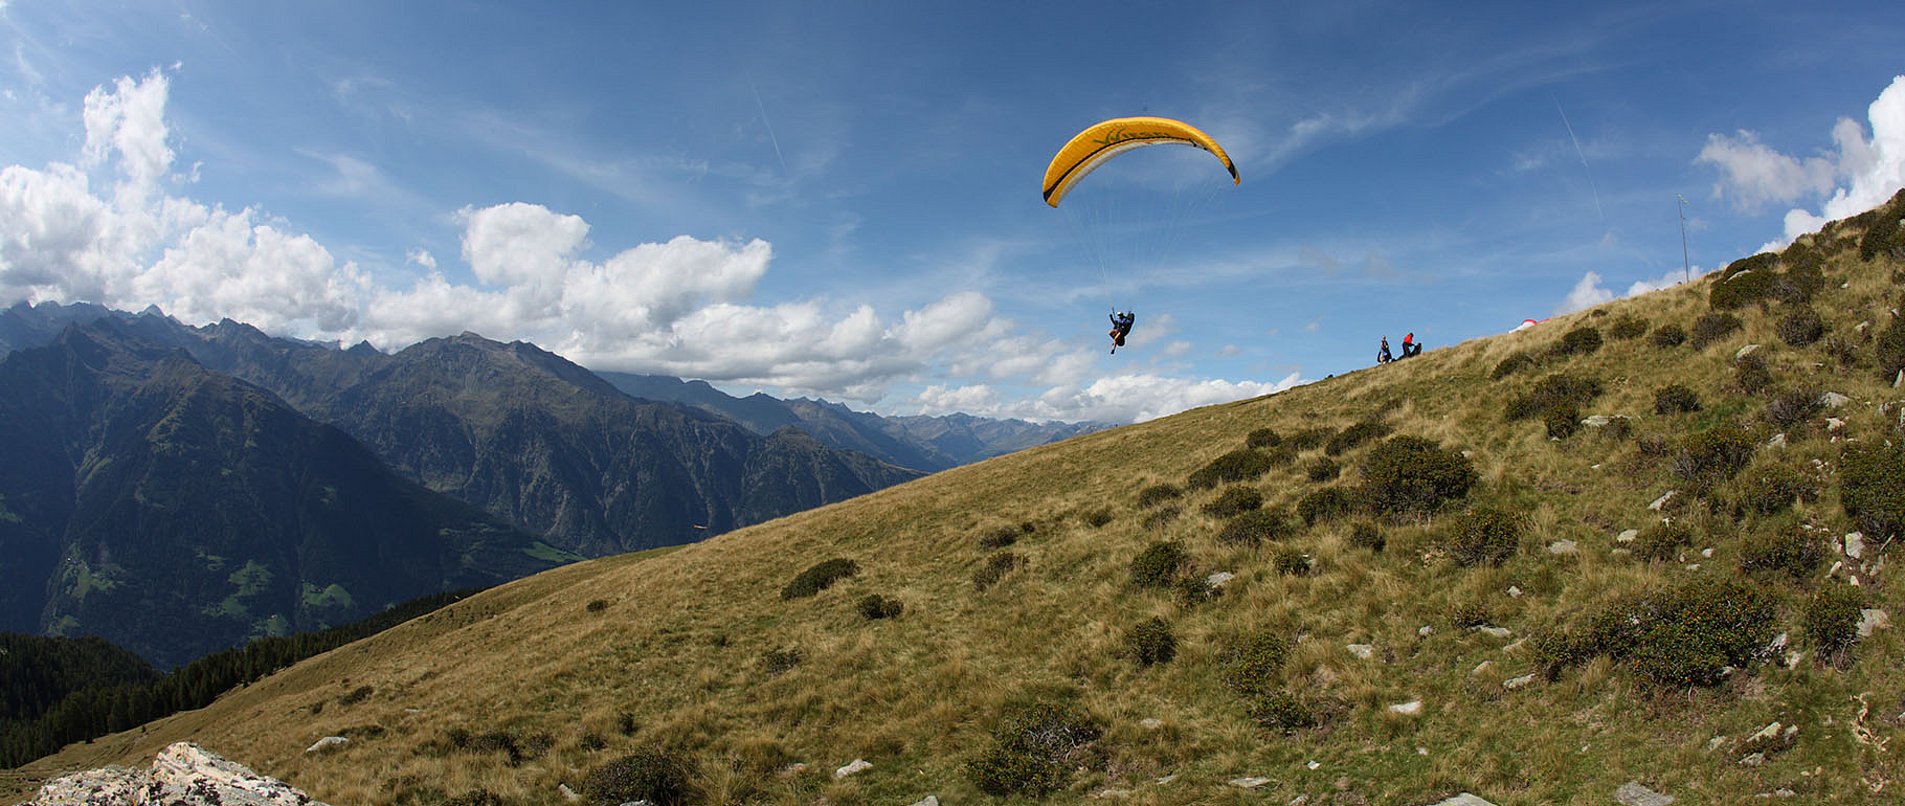 Paragleiten in Südtirol